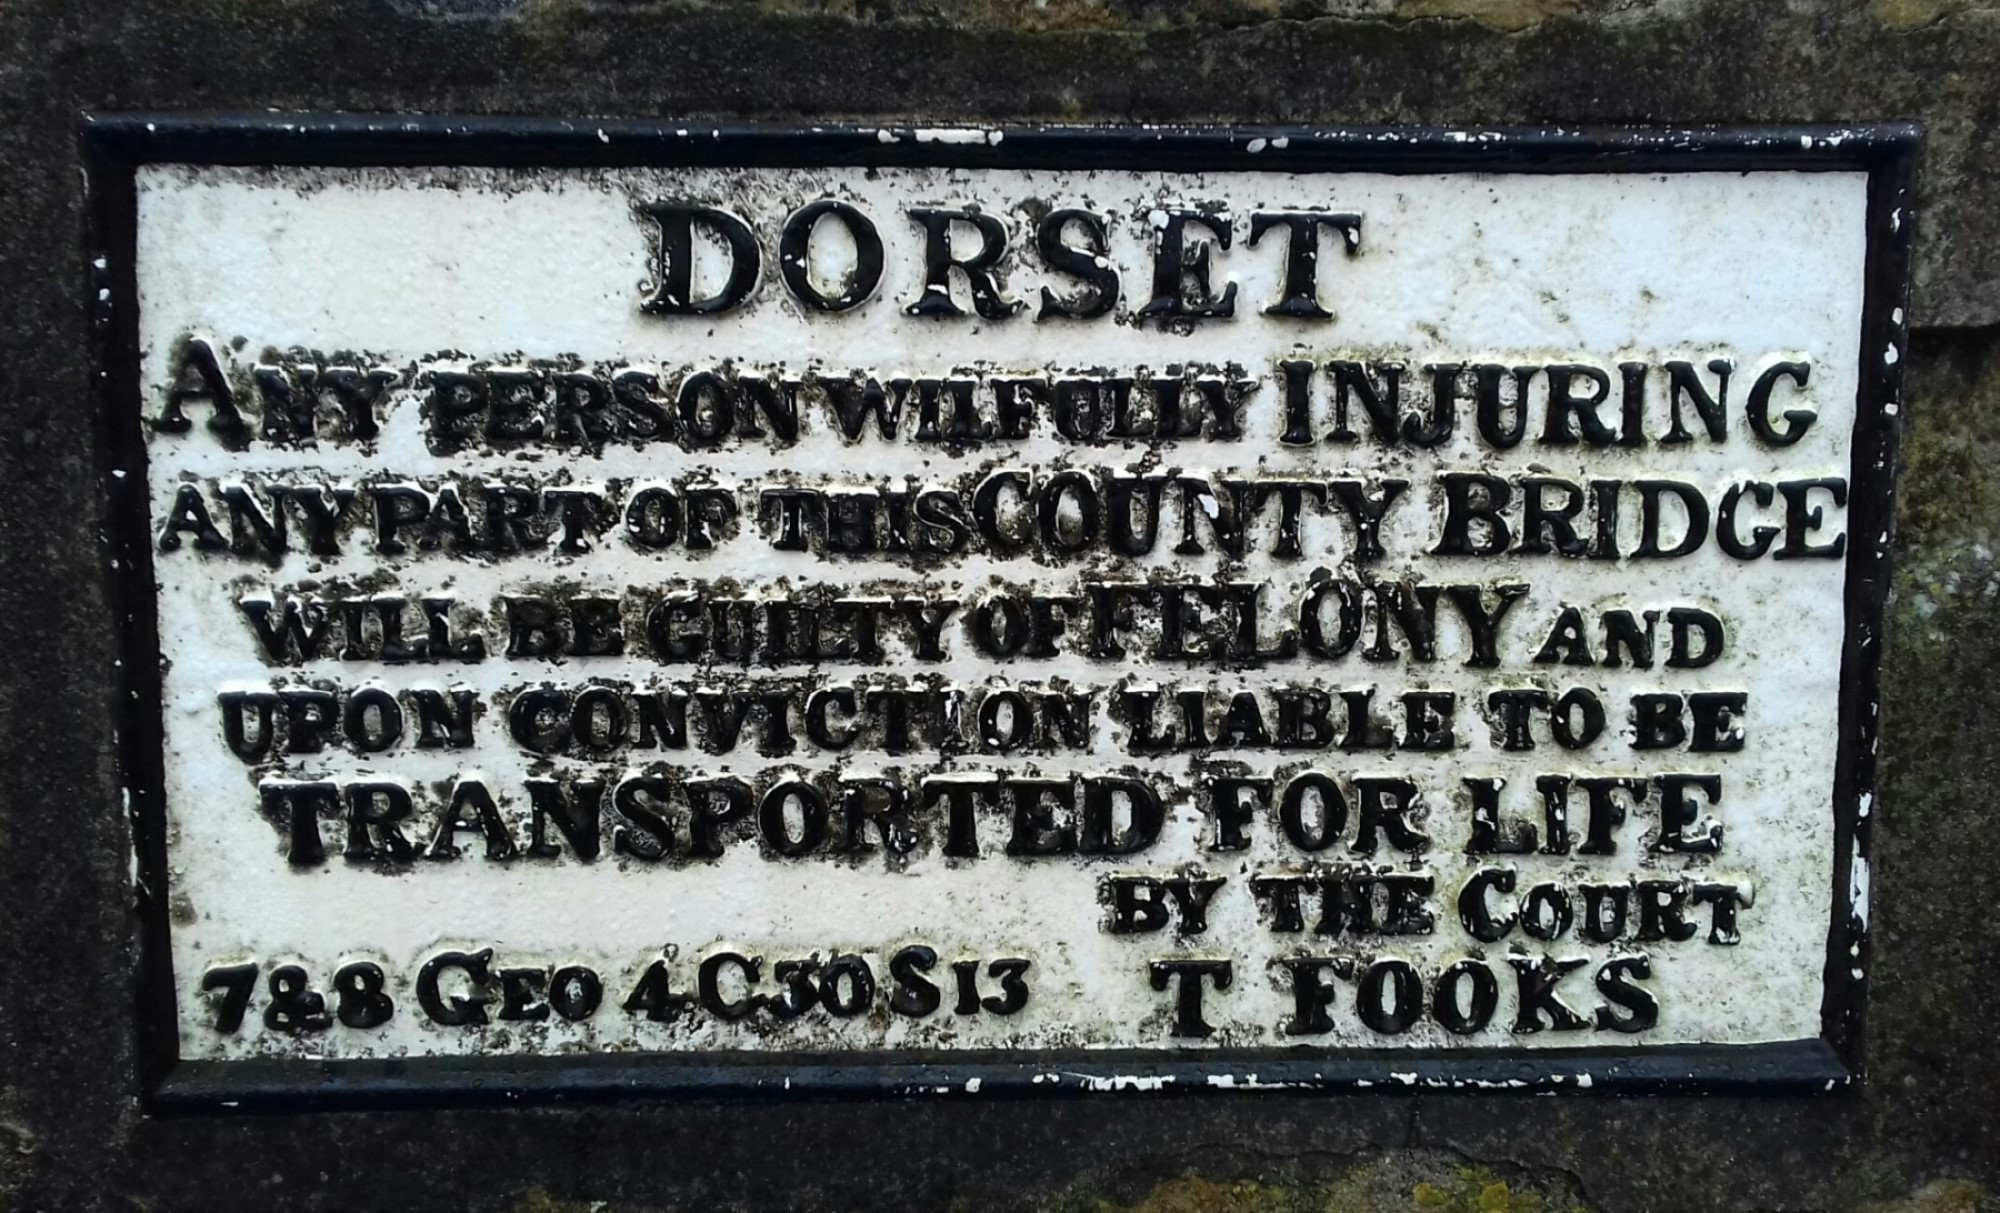 Transportation plaque on a bridge